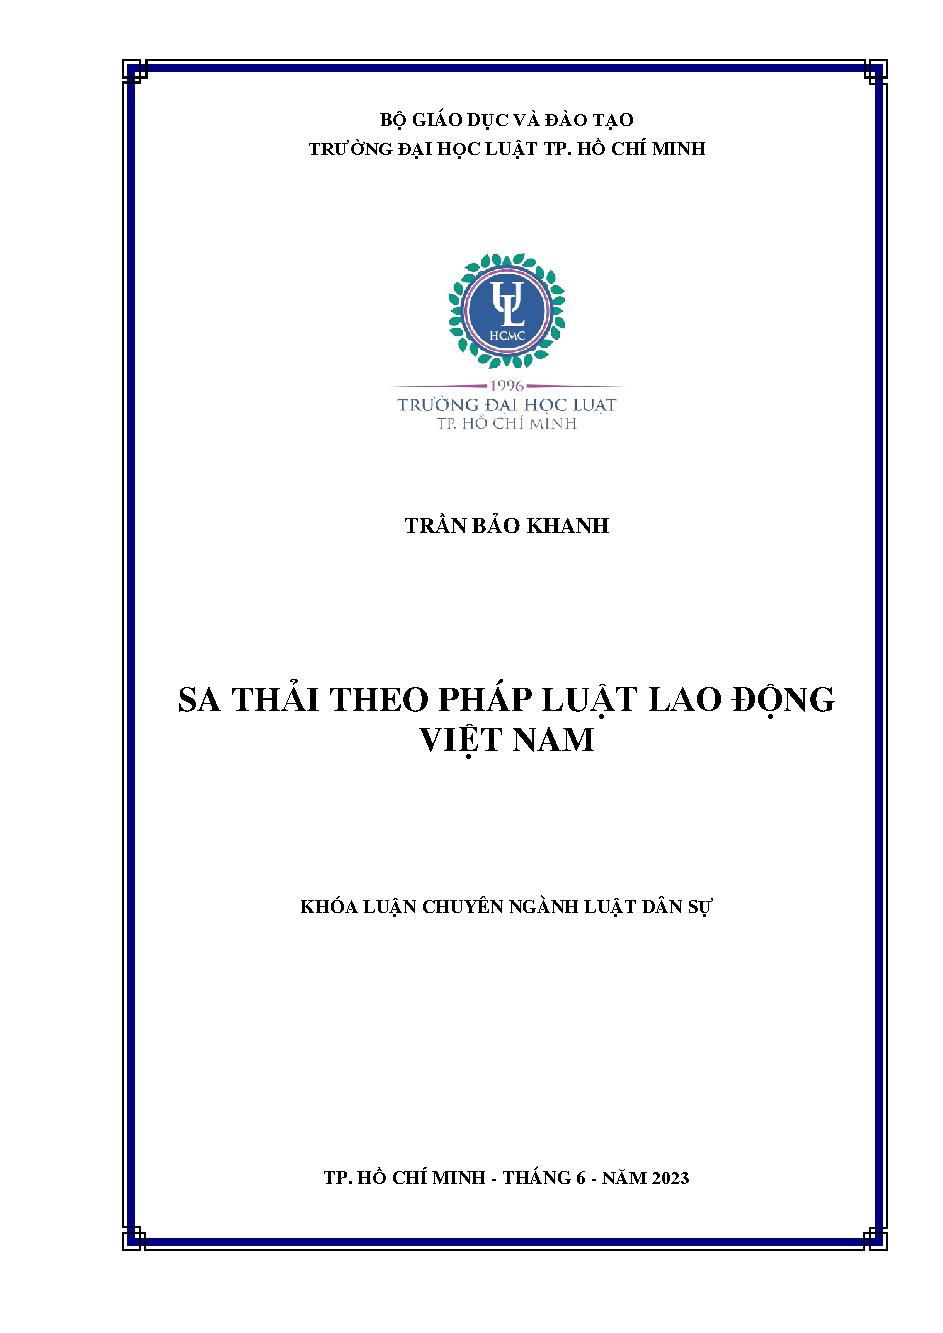 Sa thải theo pháp luật lao động Việt Nam